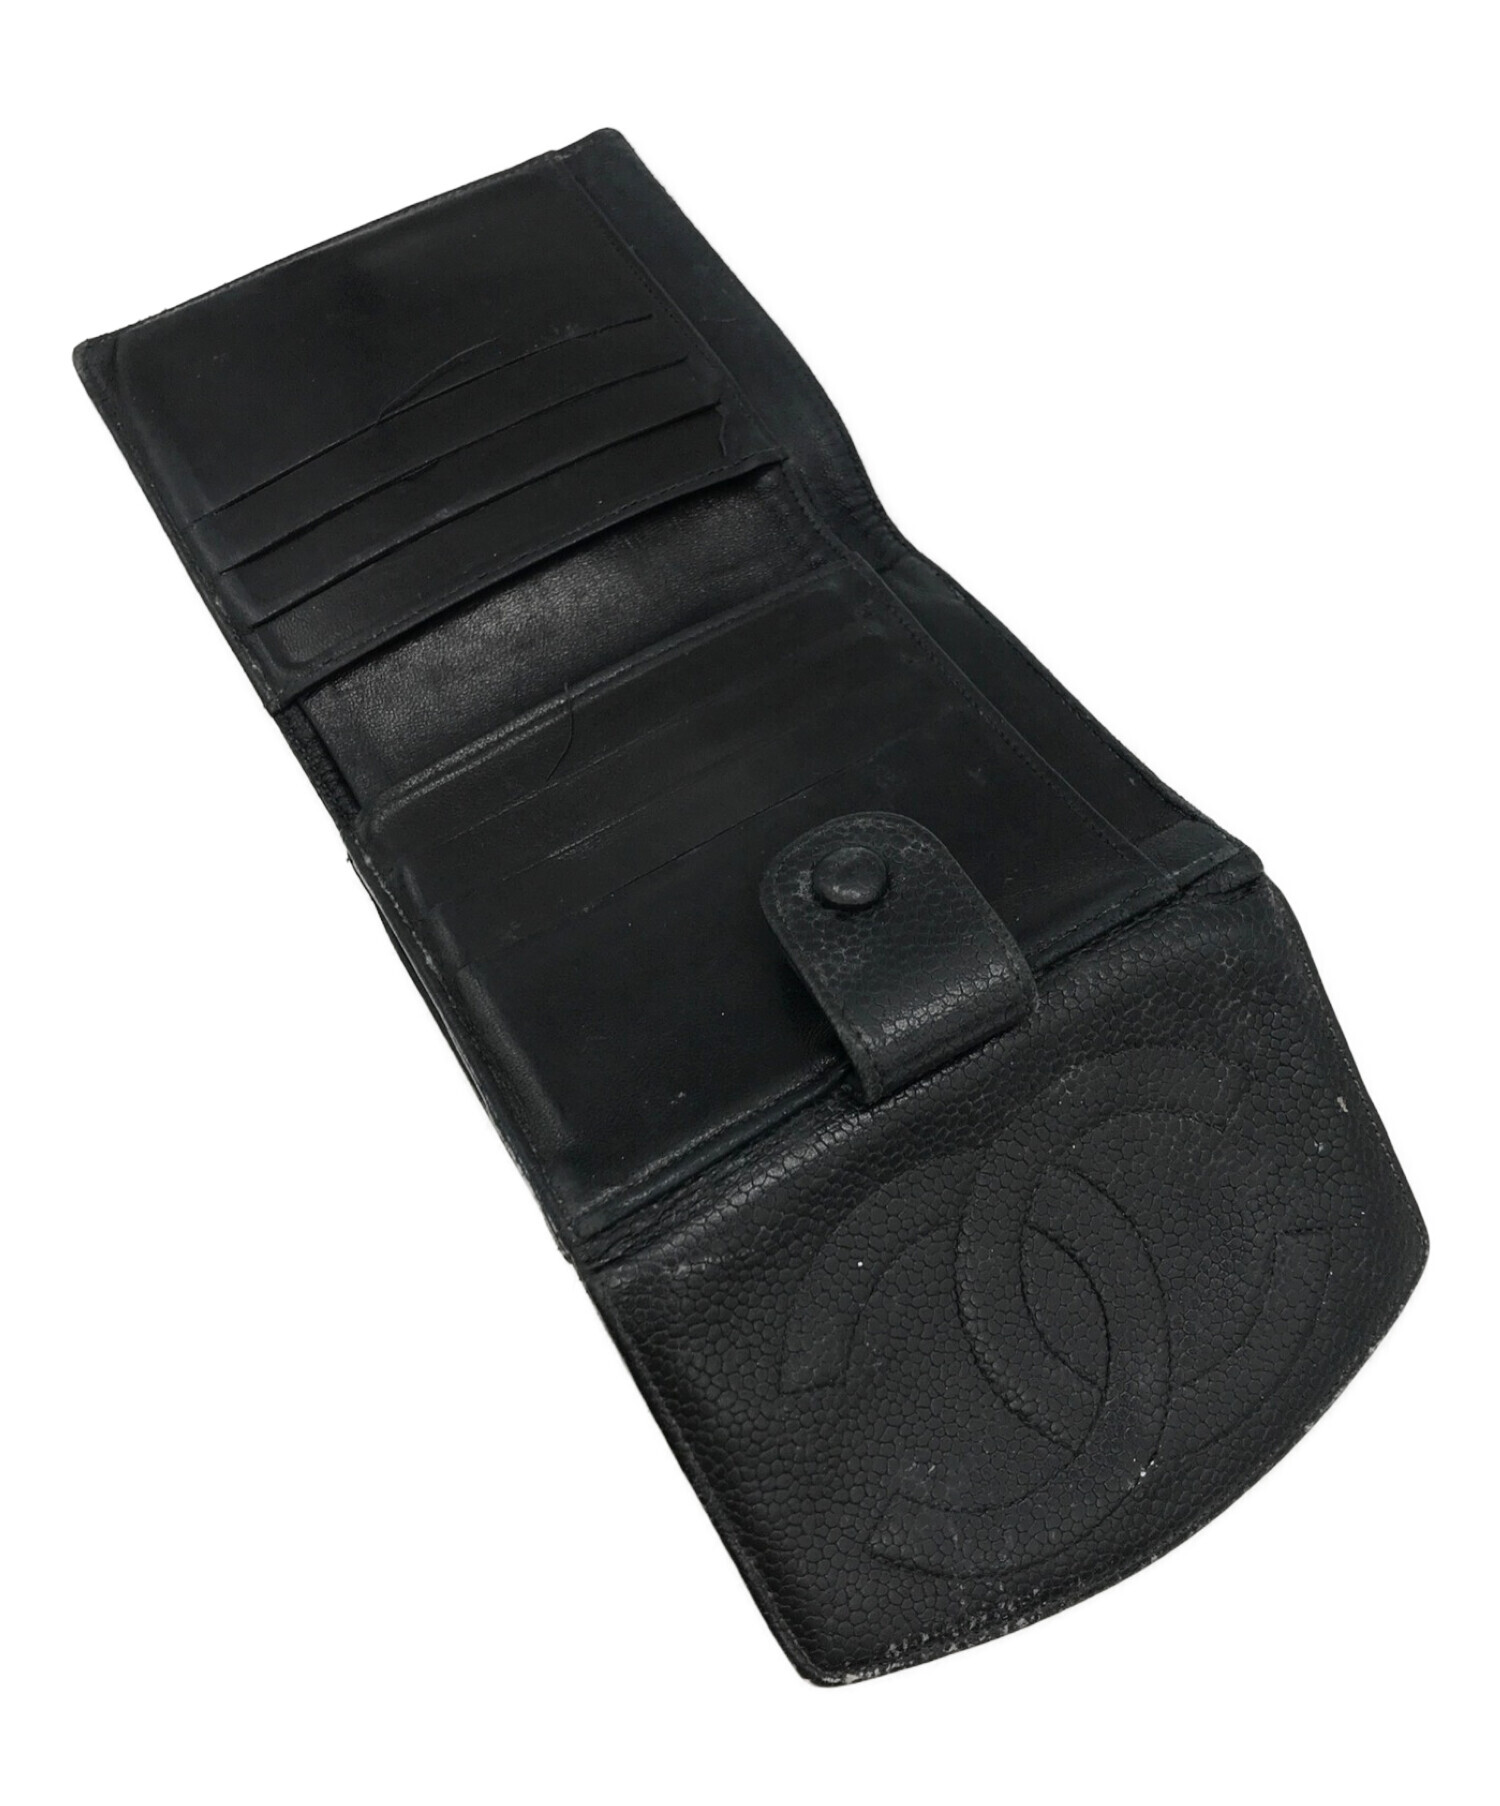 レア ヴィンテージ未使用品 シャネル 二つ折り財布 ブラック [057] - 小物